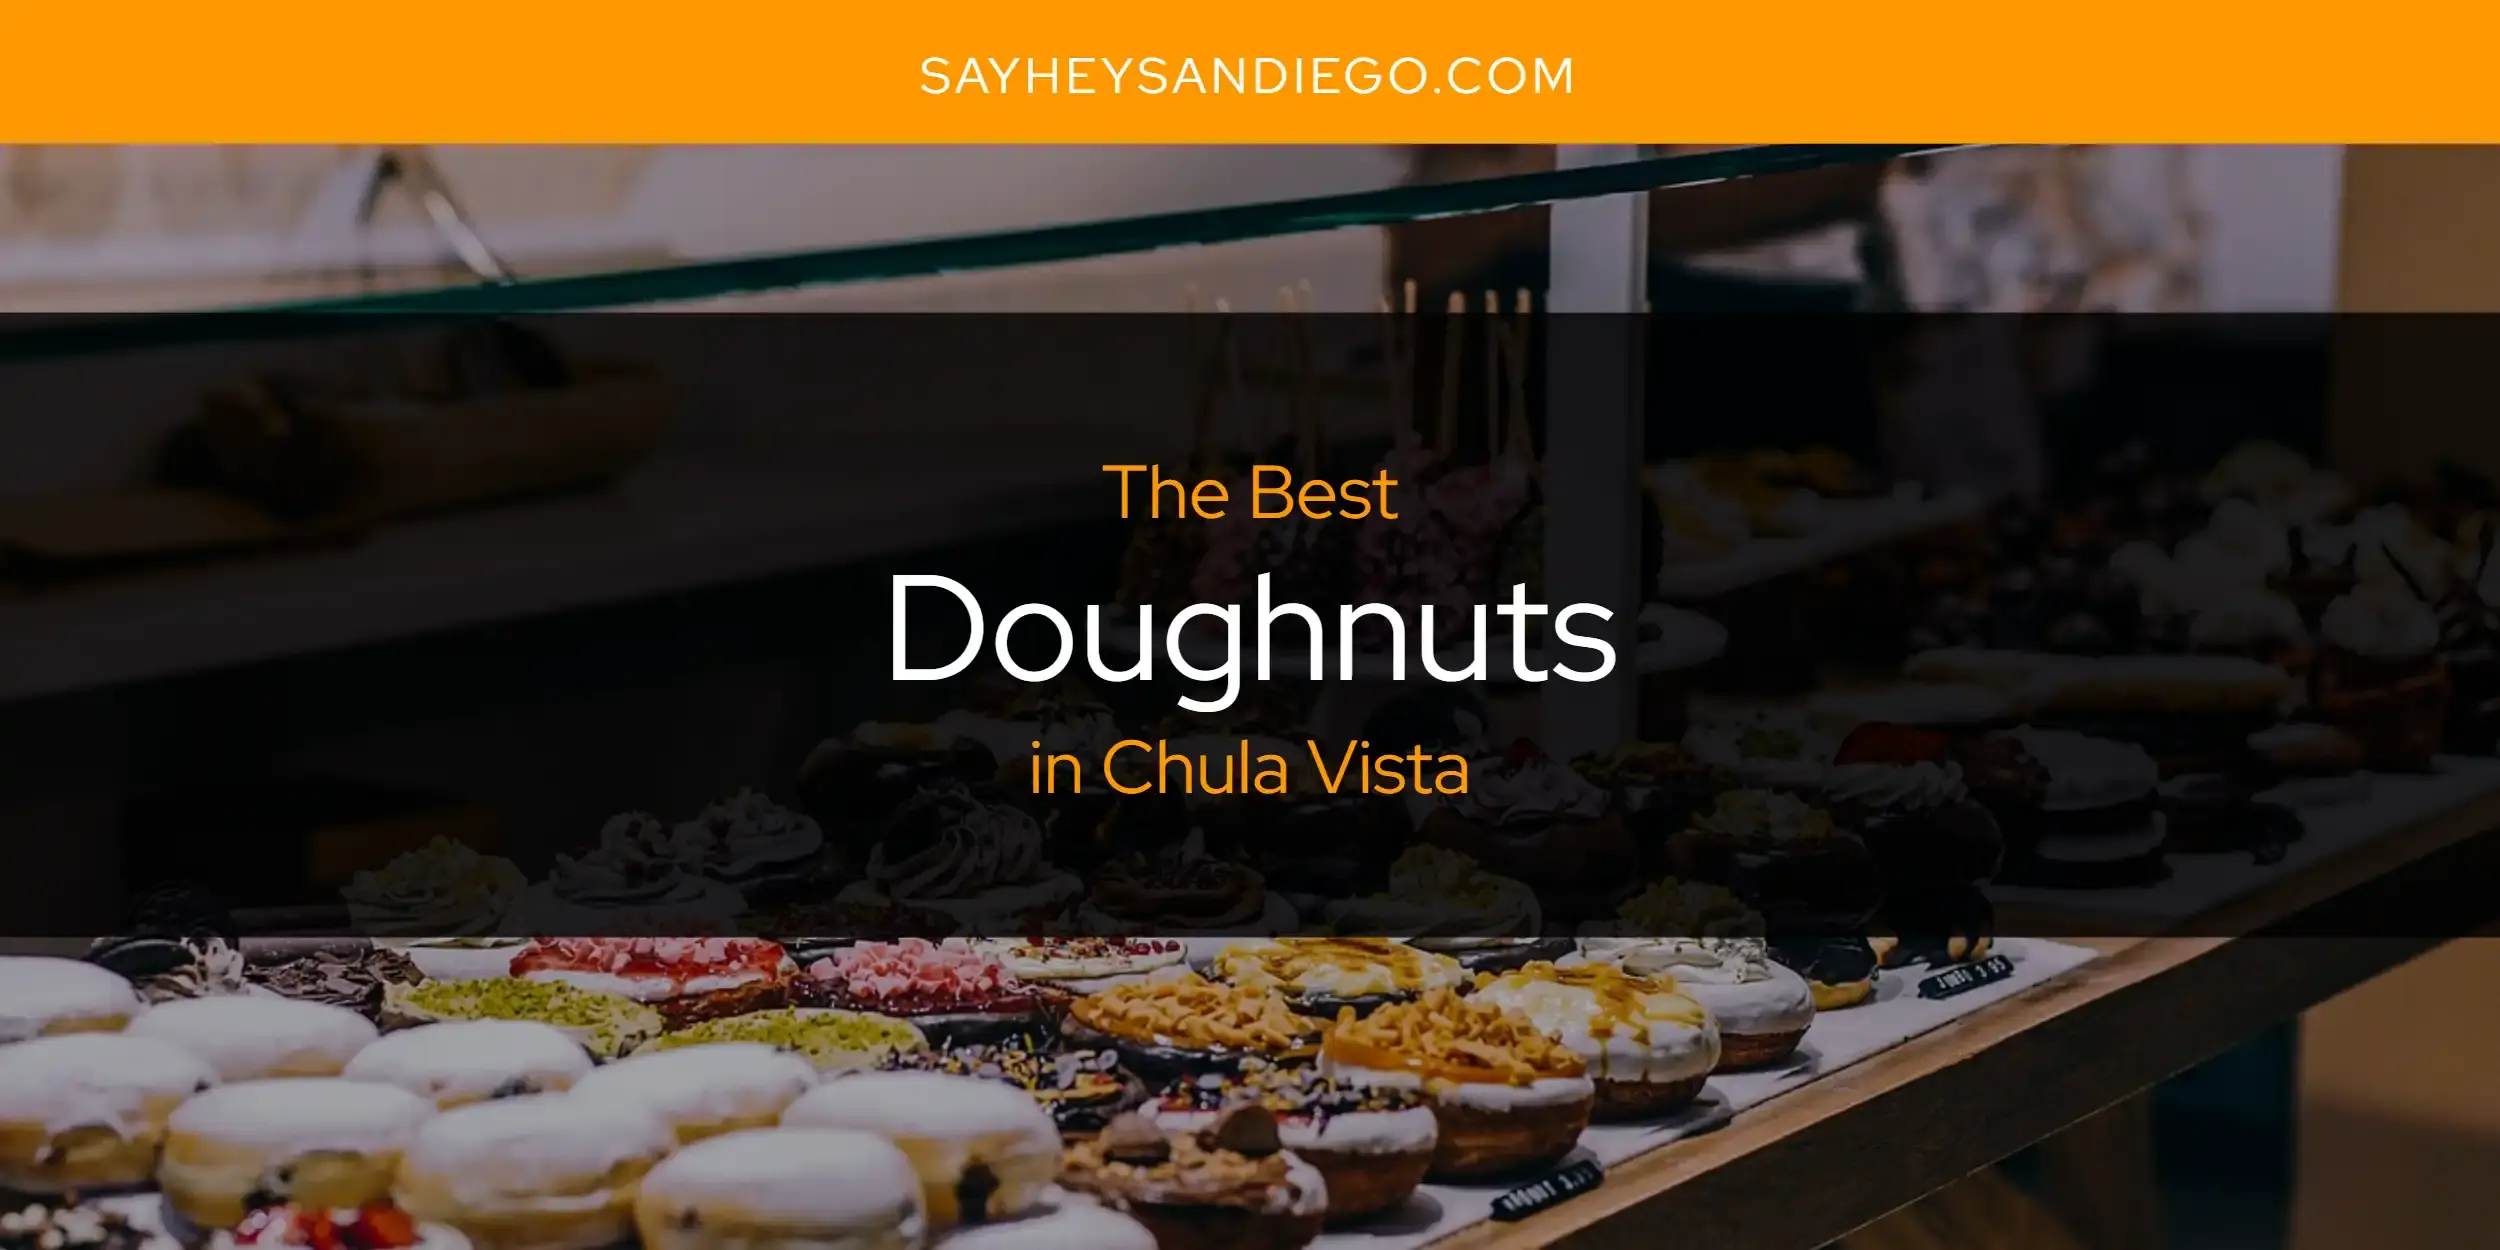 Best Doughnuts in Chula Vista? Here's the Top 13